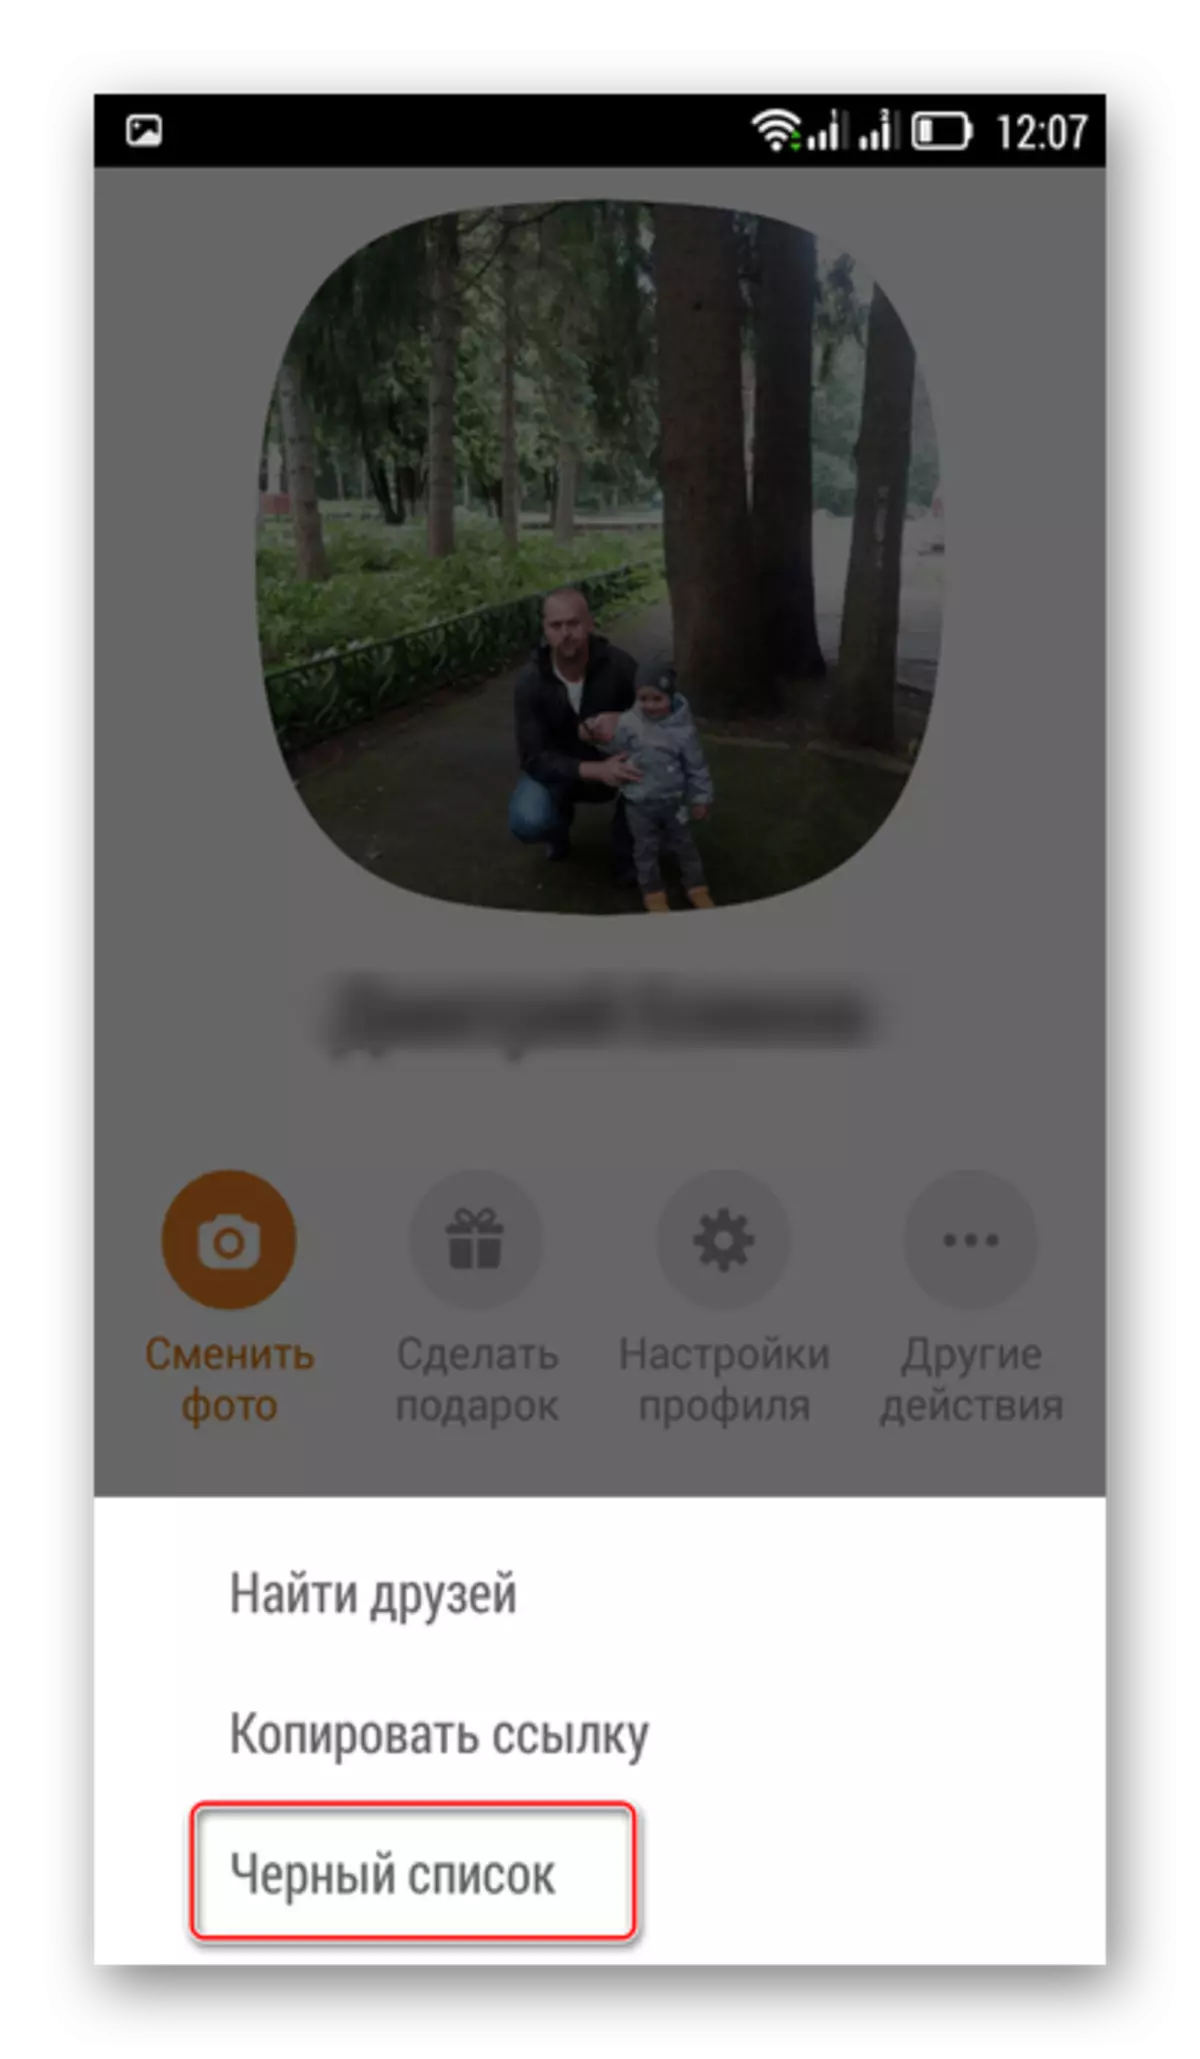 Submenu Ander aksies in mobiele aansoek Odnoklassniki